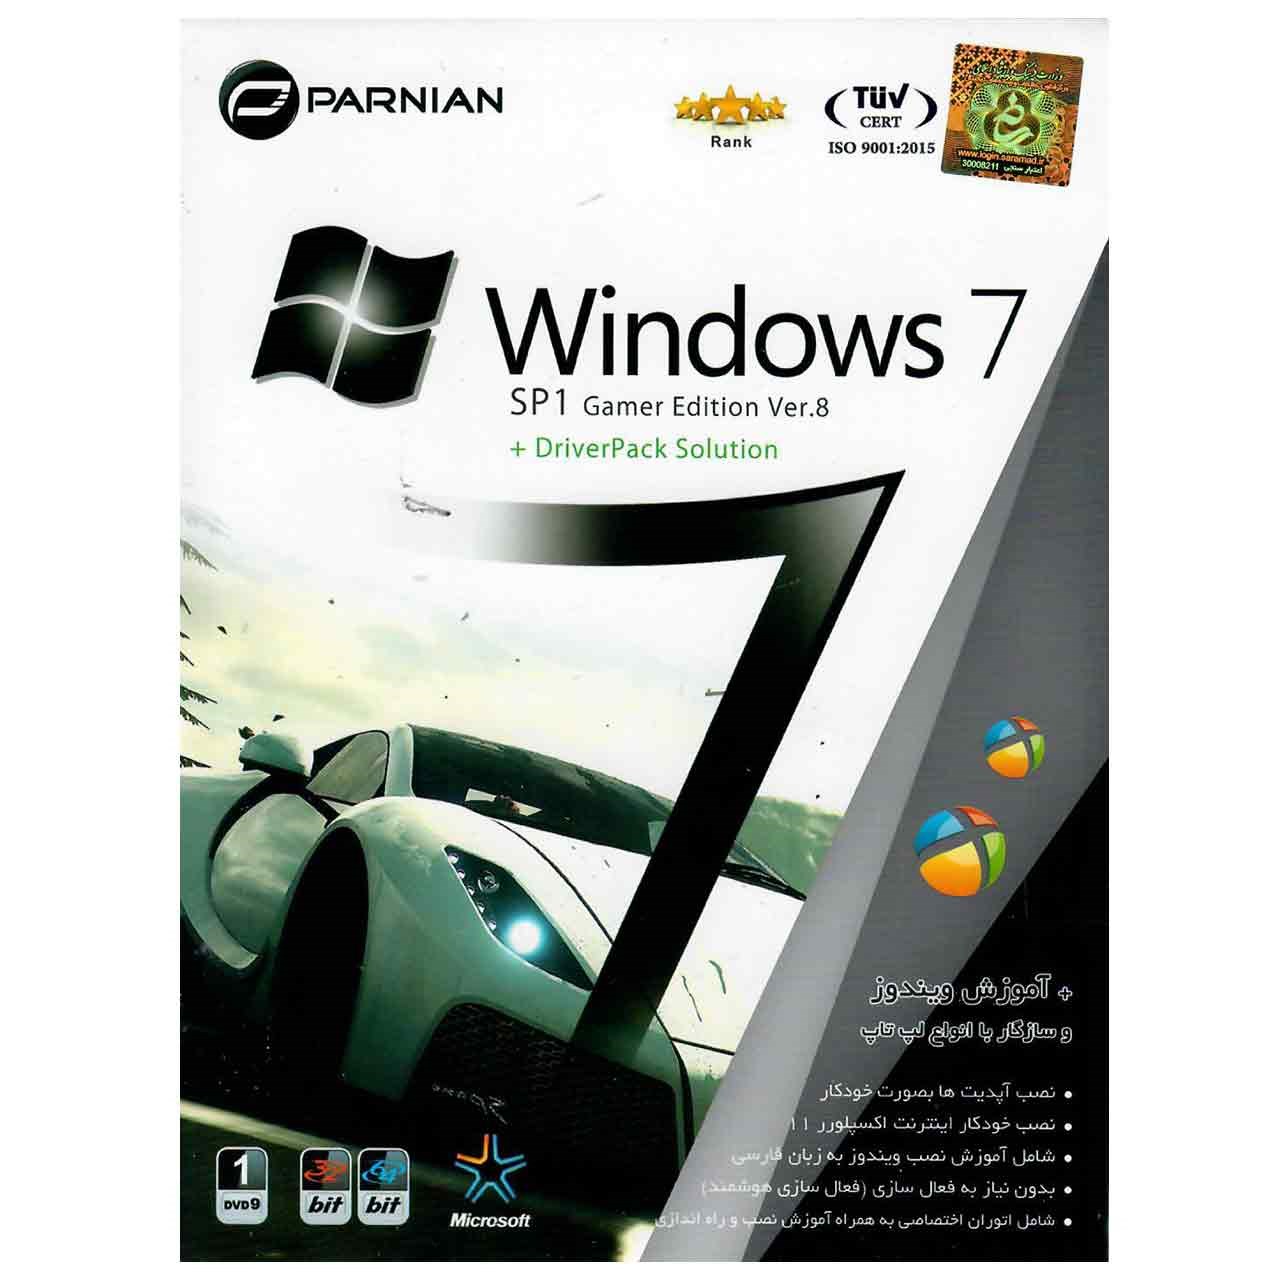 سیستم عامل Windows 7 SP1 Gamer Edition Ver.8 به همراه Driver Pack Solution نشر پرنیان